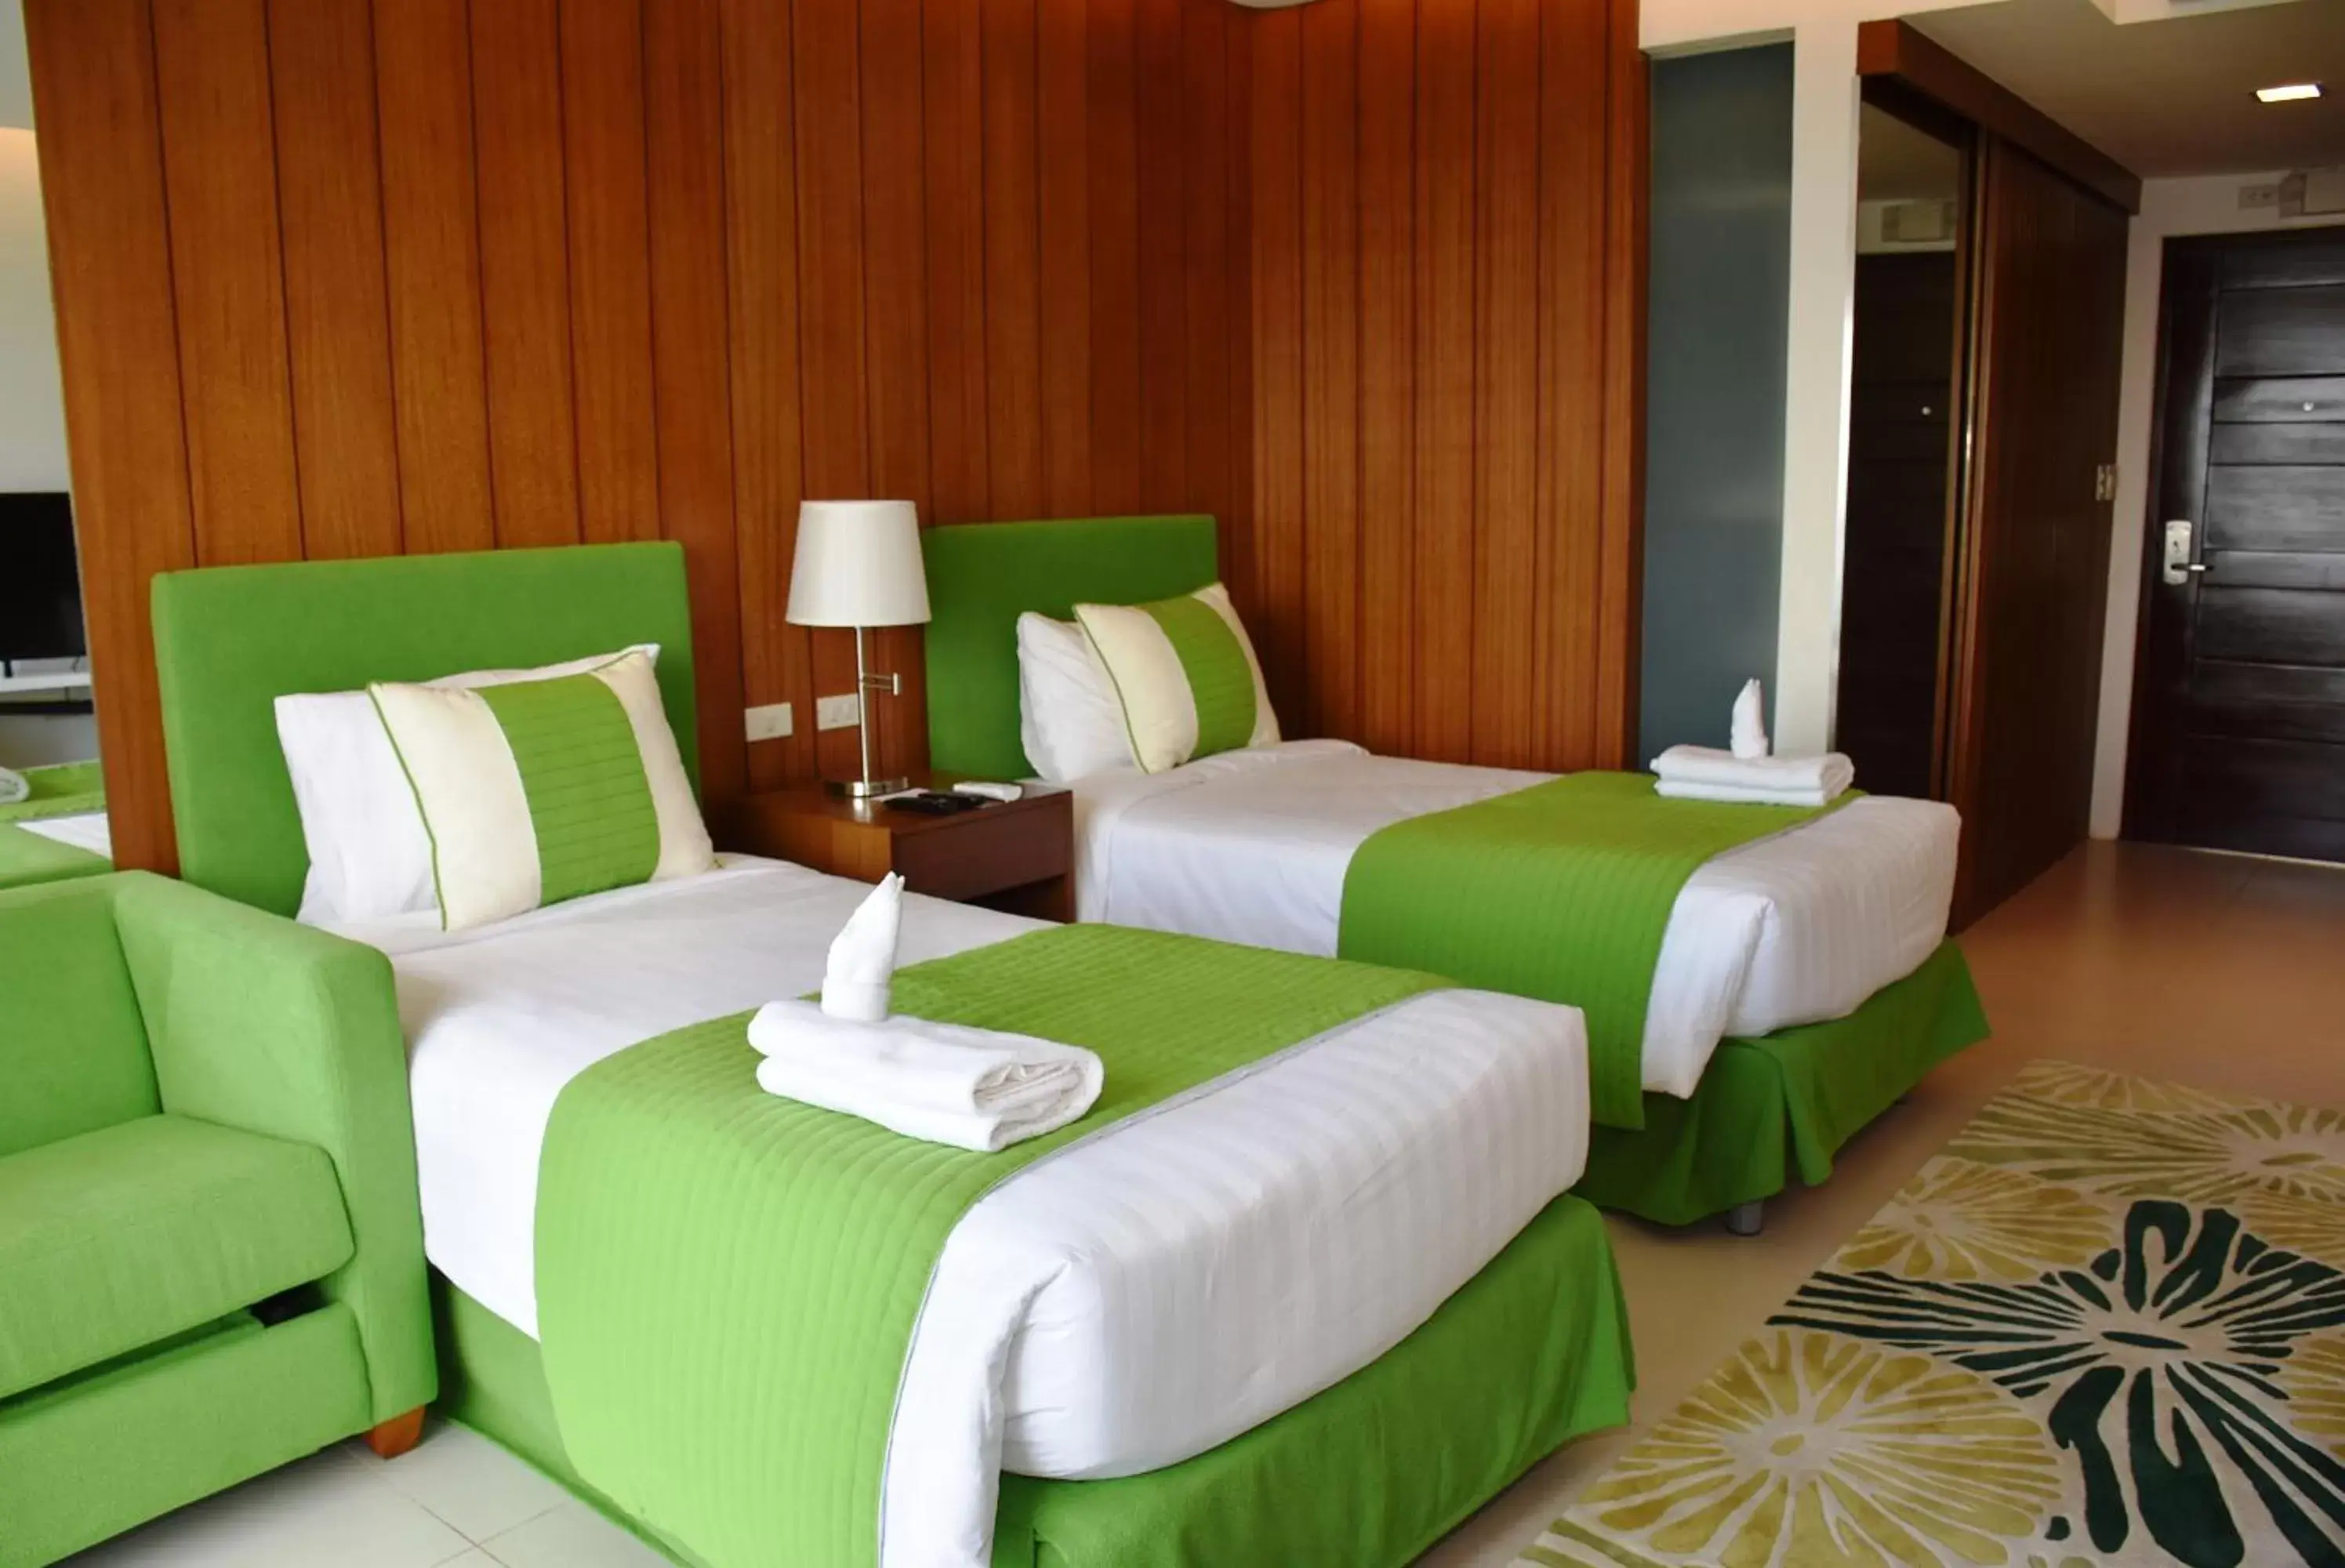 Shower, Bed in Timberland Highlands Resort